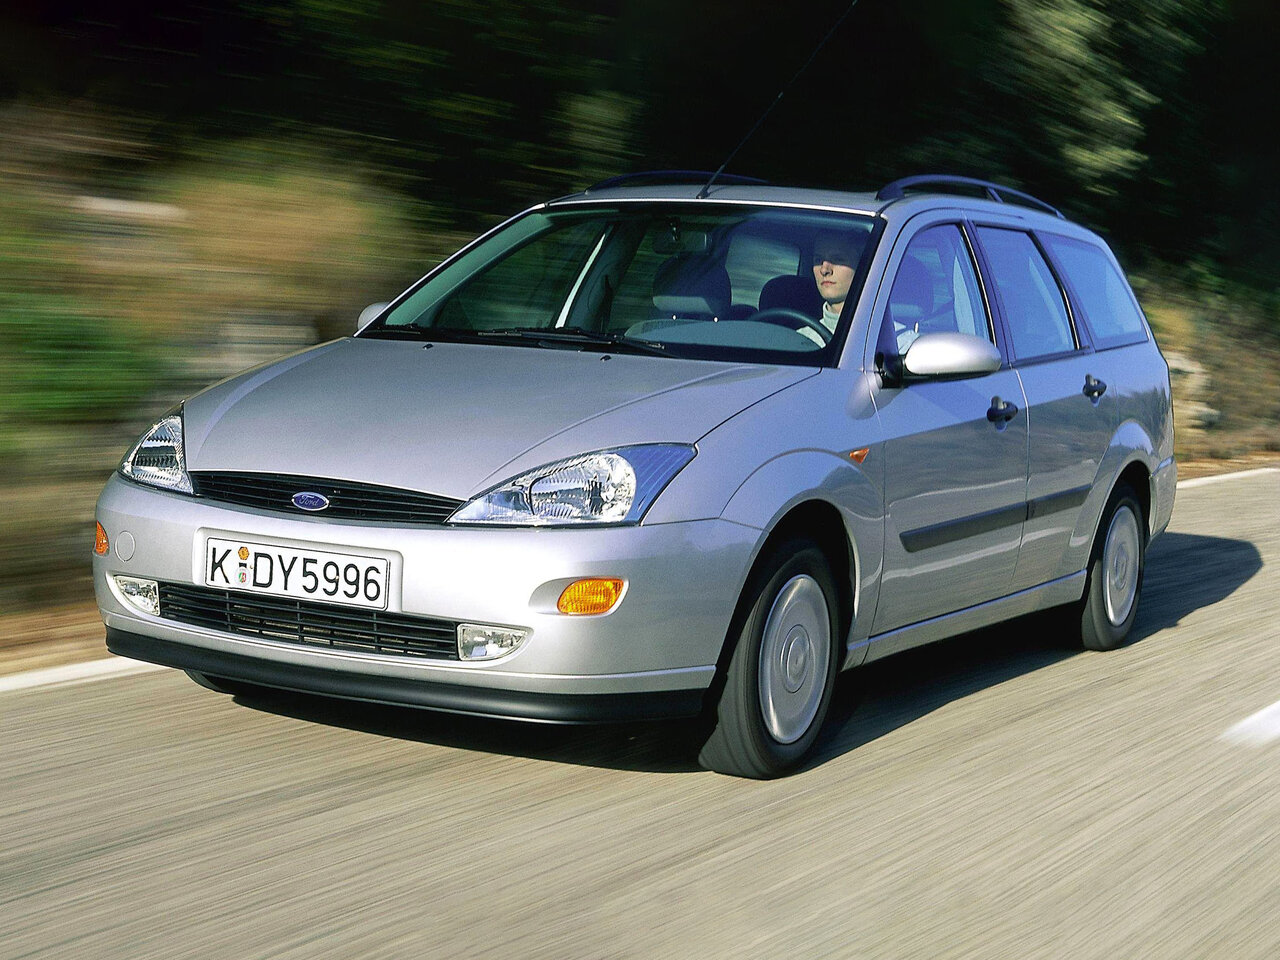 Форд фокус 1 универсал 1.8. Форд фокус универсал 2001. Форд фокус универсал 1999. Форд фокус 1998 – 2001. Форд фокус универсал 2001 года.